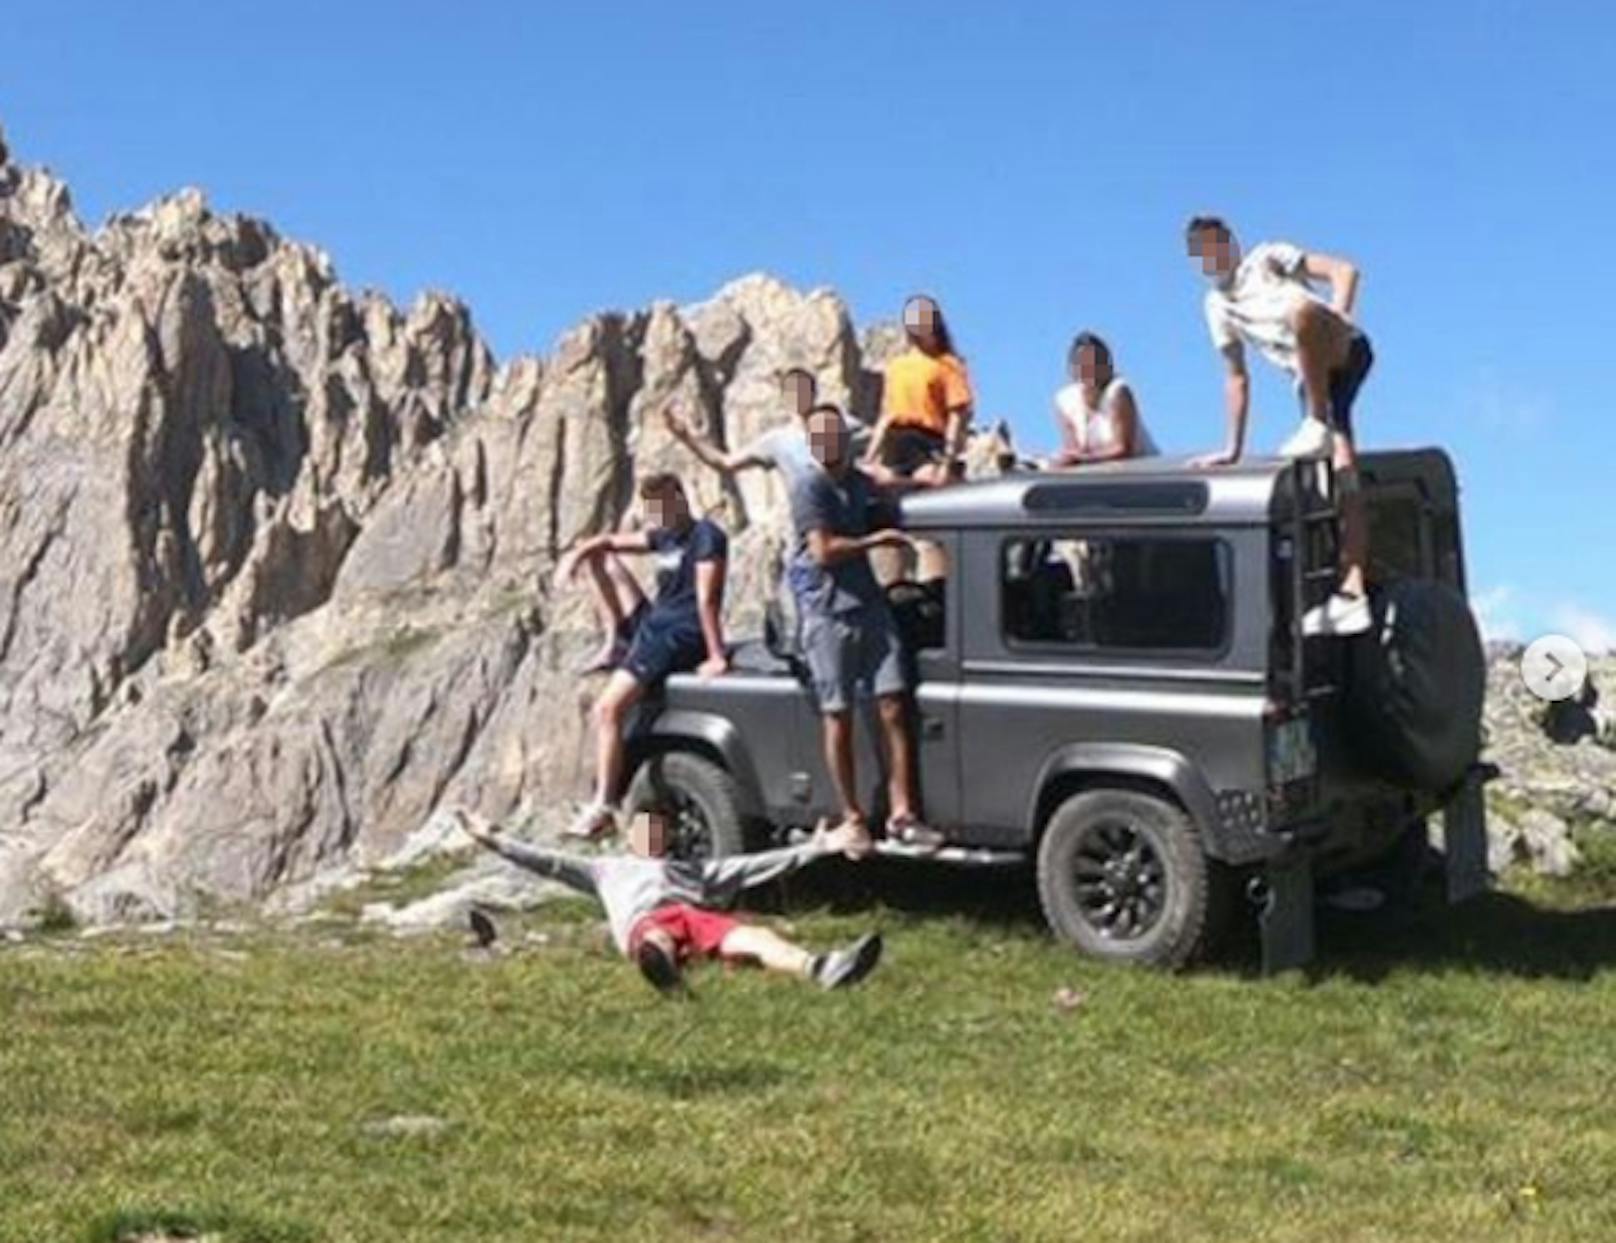 Die Gruppe am Unfallfahrzeug bei ihrem Castelmagno-Urlaub 2019.